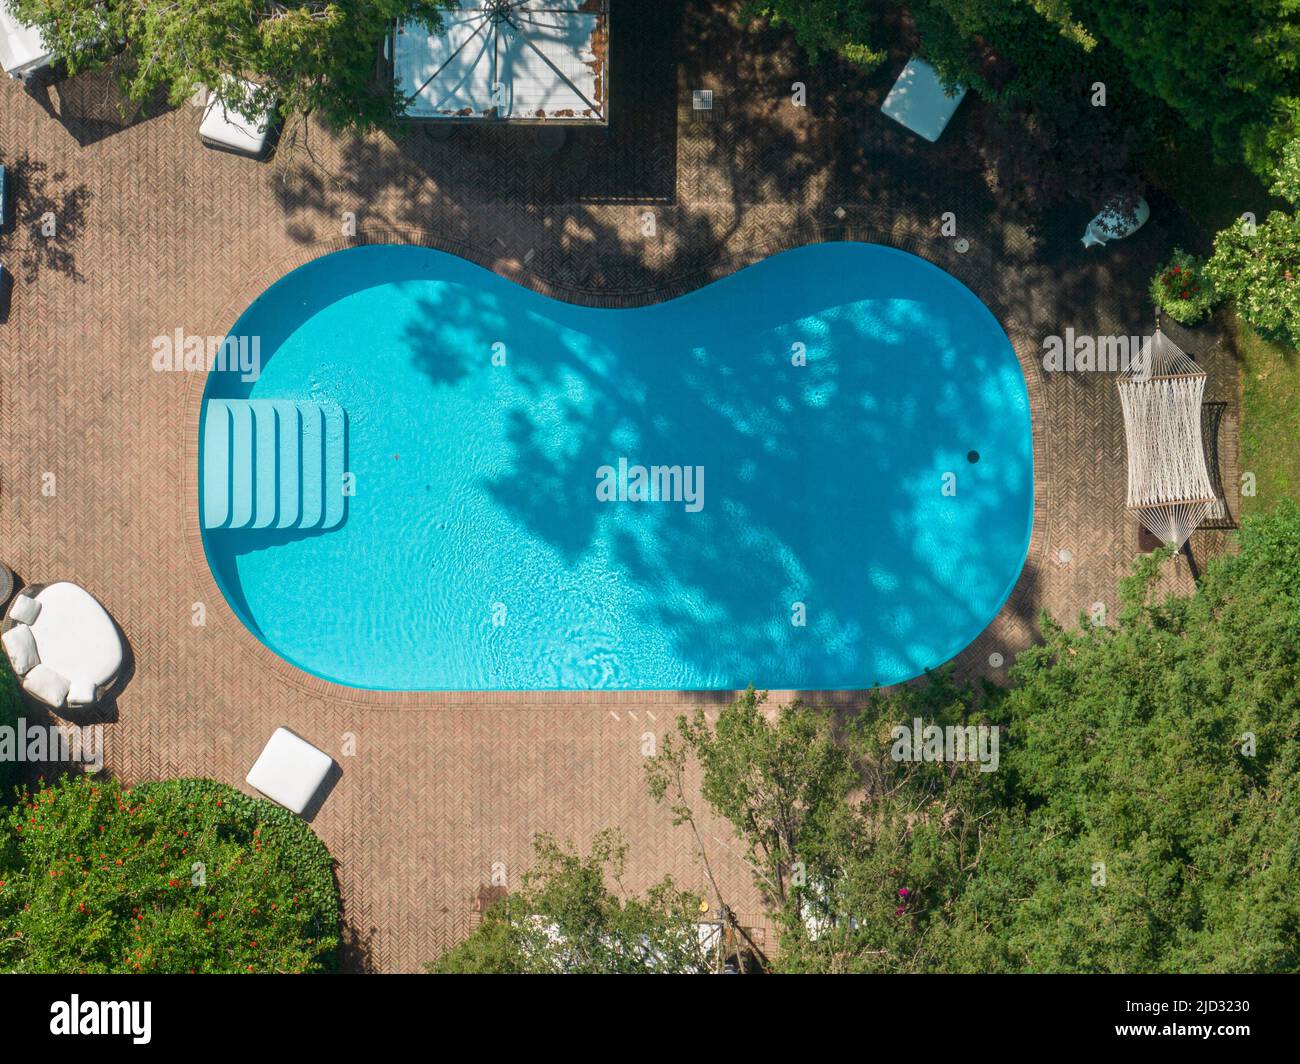 Vista aérea de una piscina, relajación y resort, bancos y asientos. Hamaca. Cómo relajarse rodeado de vegetación. Transparente y cristalino Foto de stock